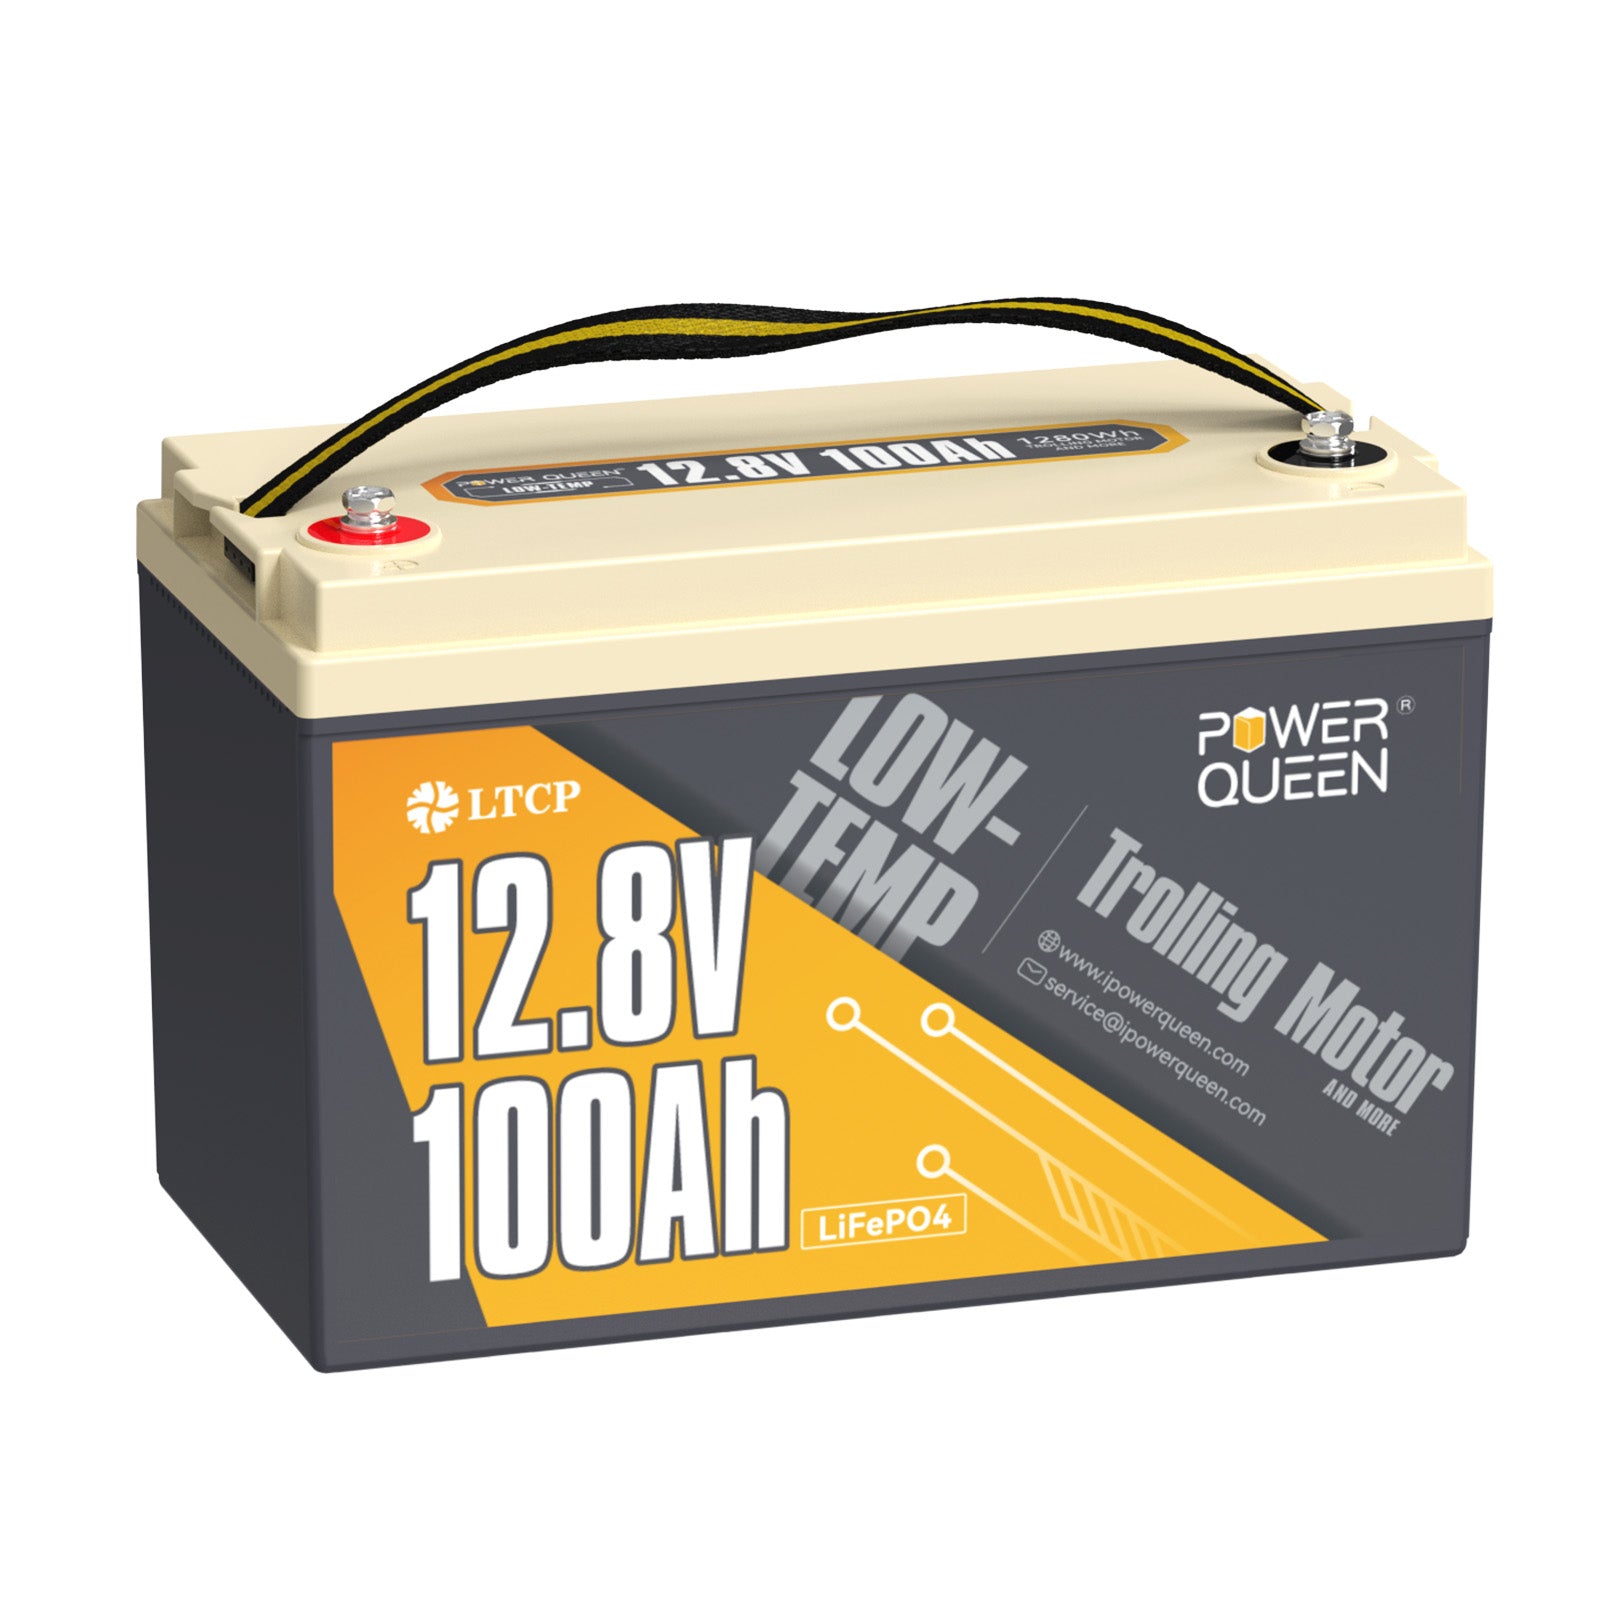 Power Queen 12,8V 100Ah LiFePO4-batterij bij lage temperatuur, batterij voor trollingmotor